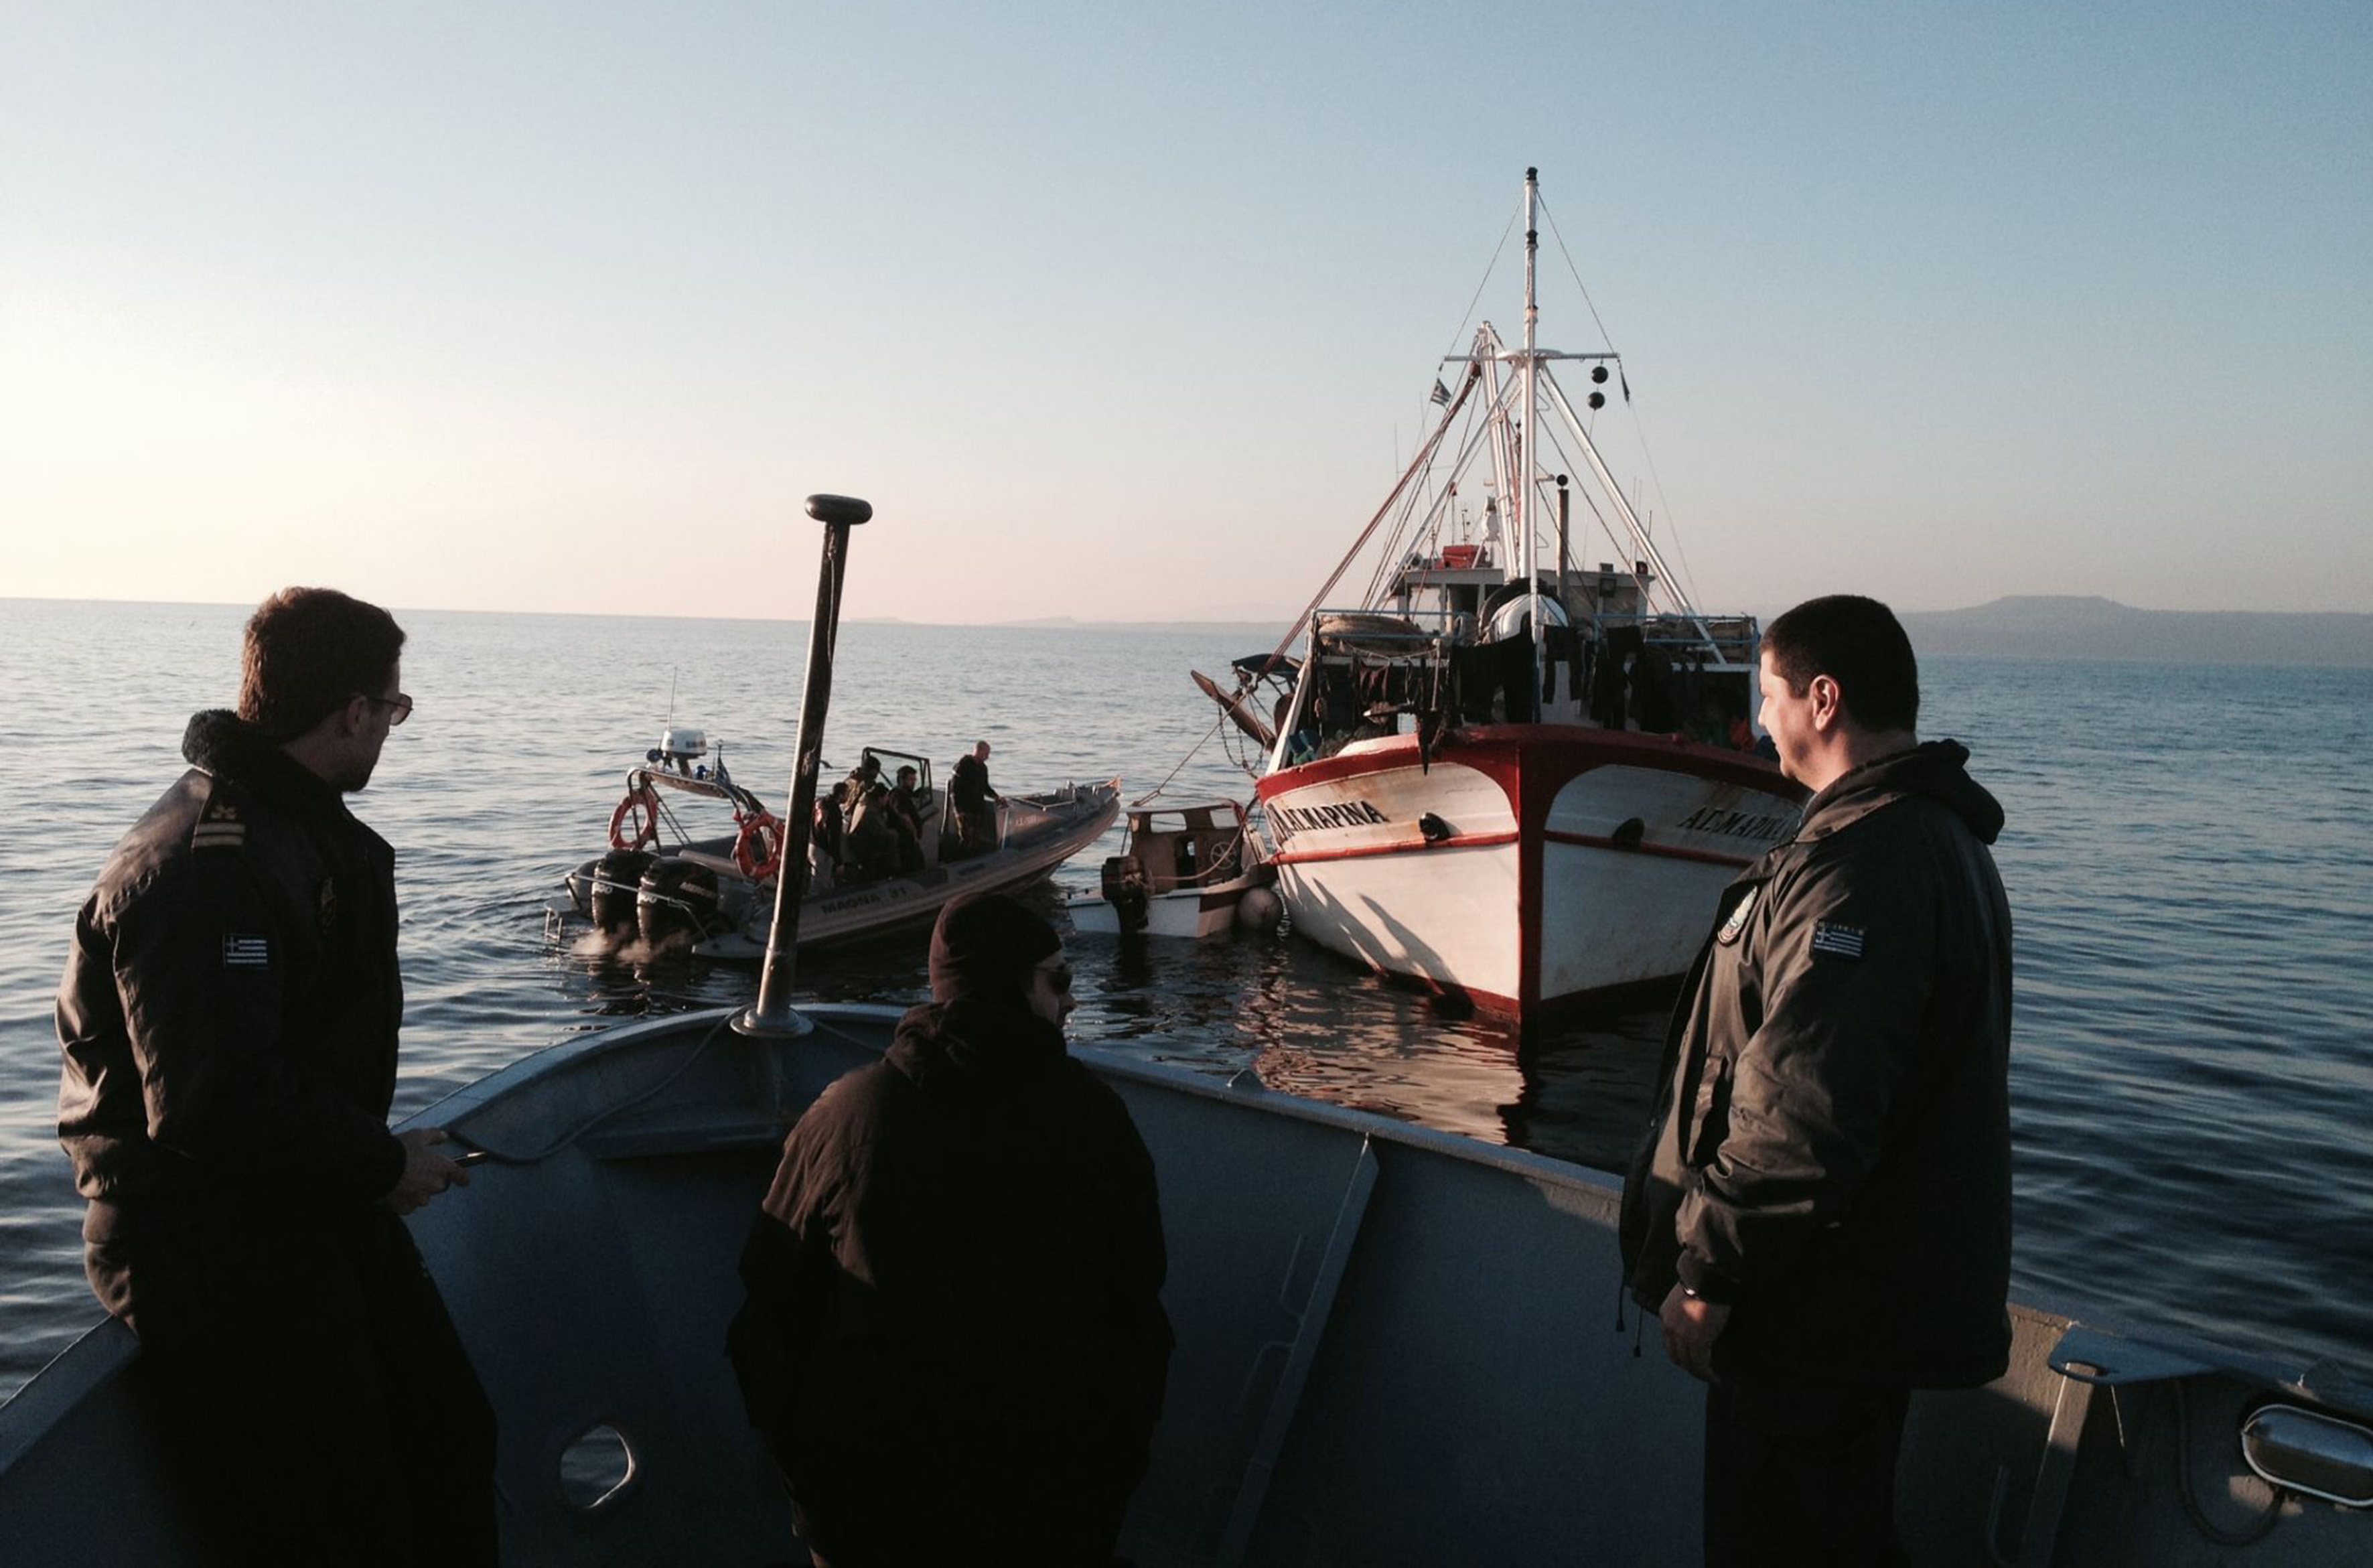 Διασώθηκαν 11 μετανάστες στη θαλάσσια περιοχή του Αγαθονησίου